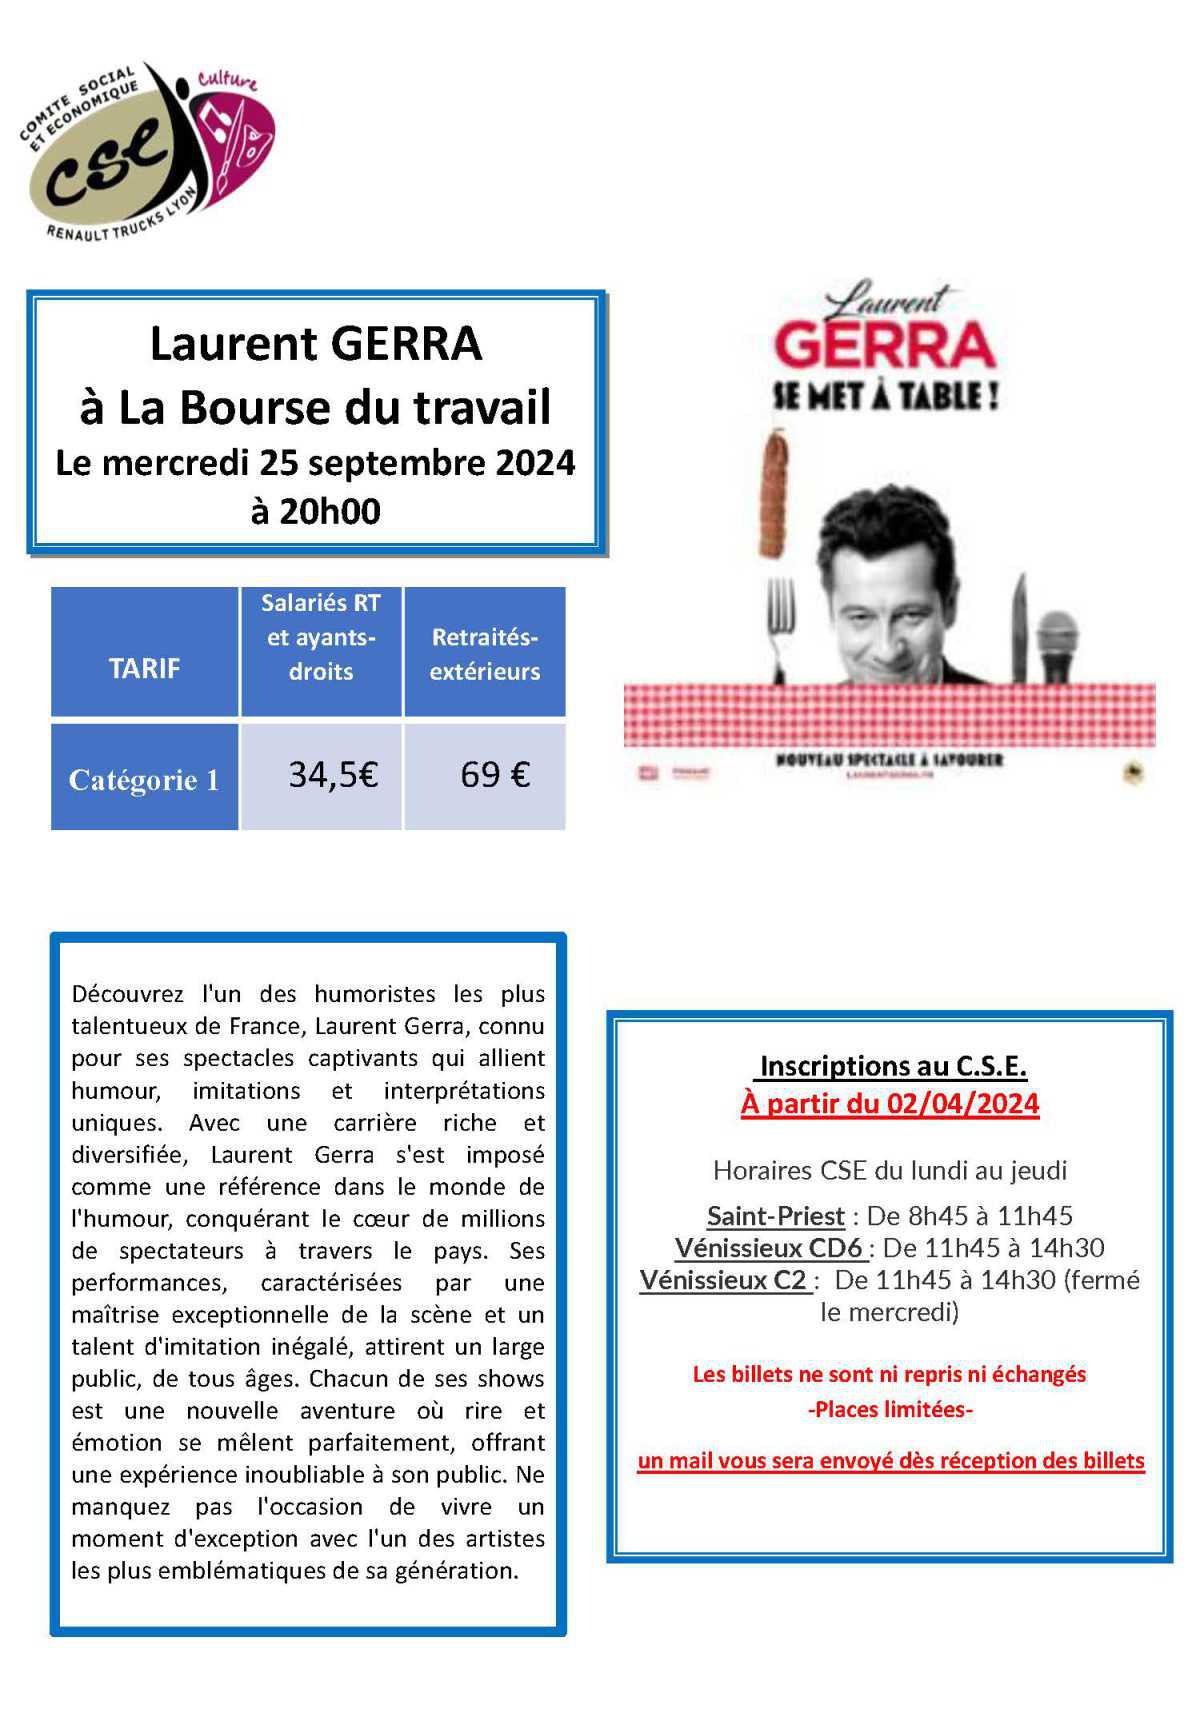 Laurent GERRA à la Bourse du travail le mercredi 25 septembre 2024